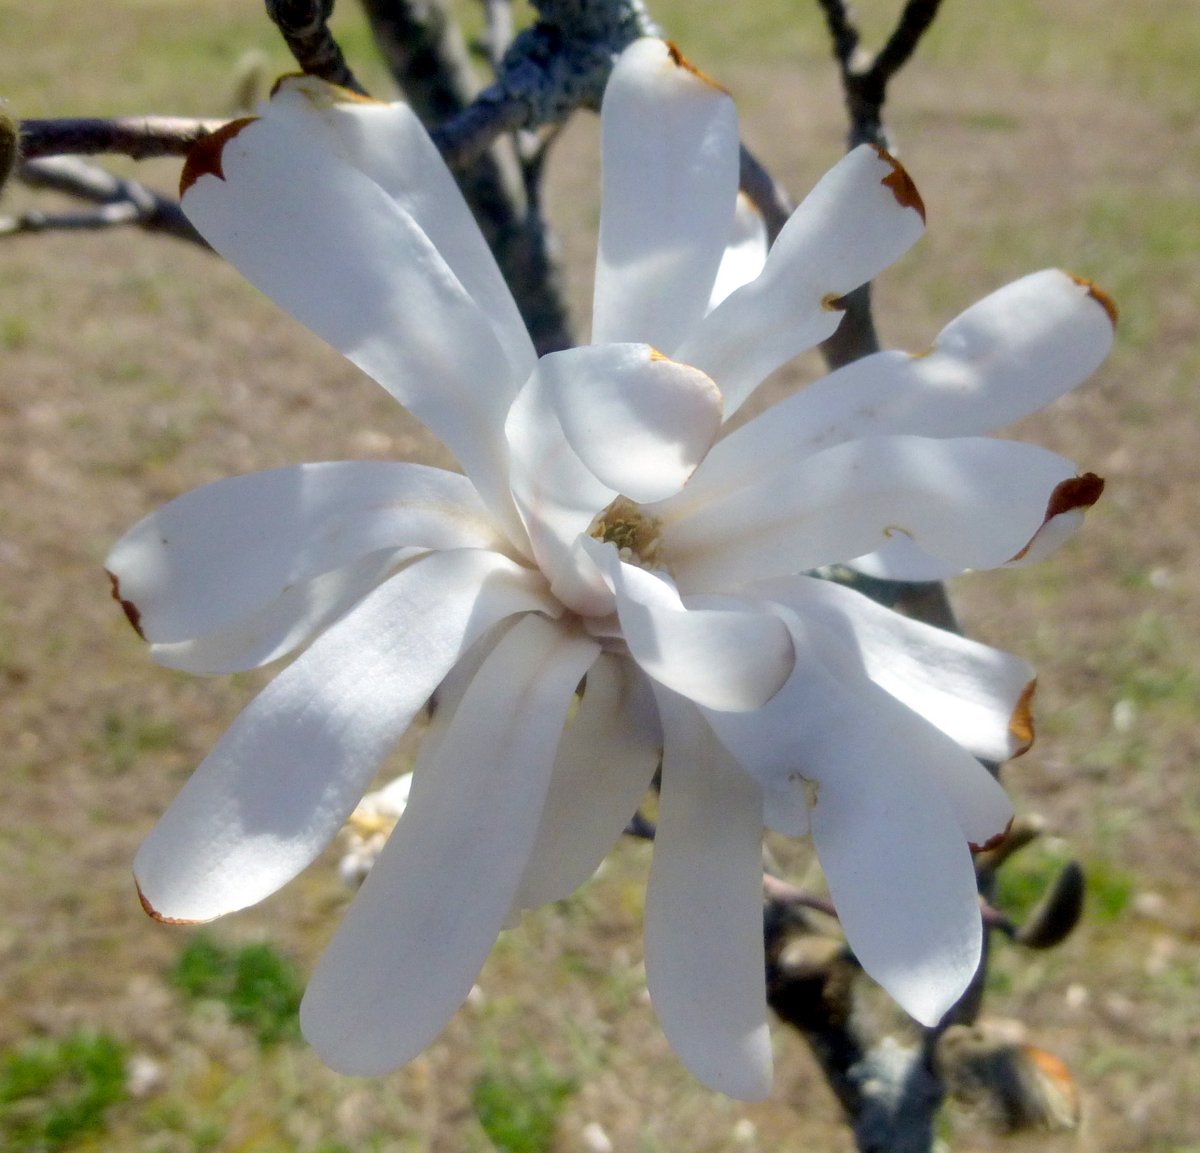 2. Magnolia